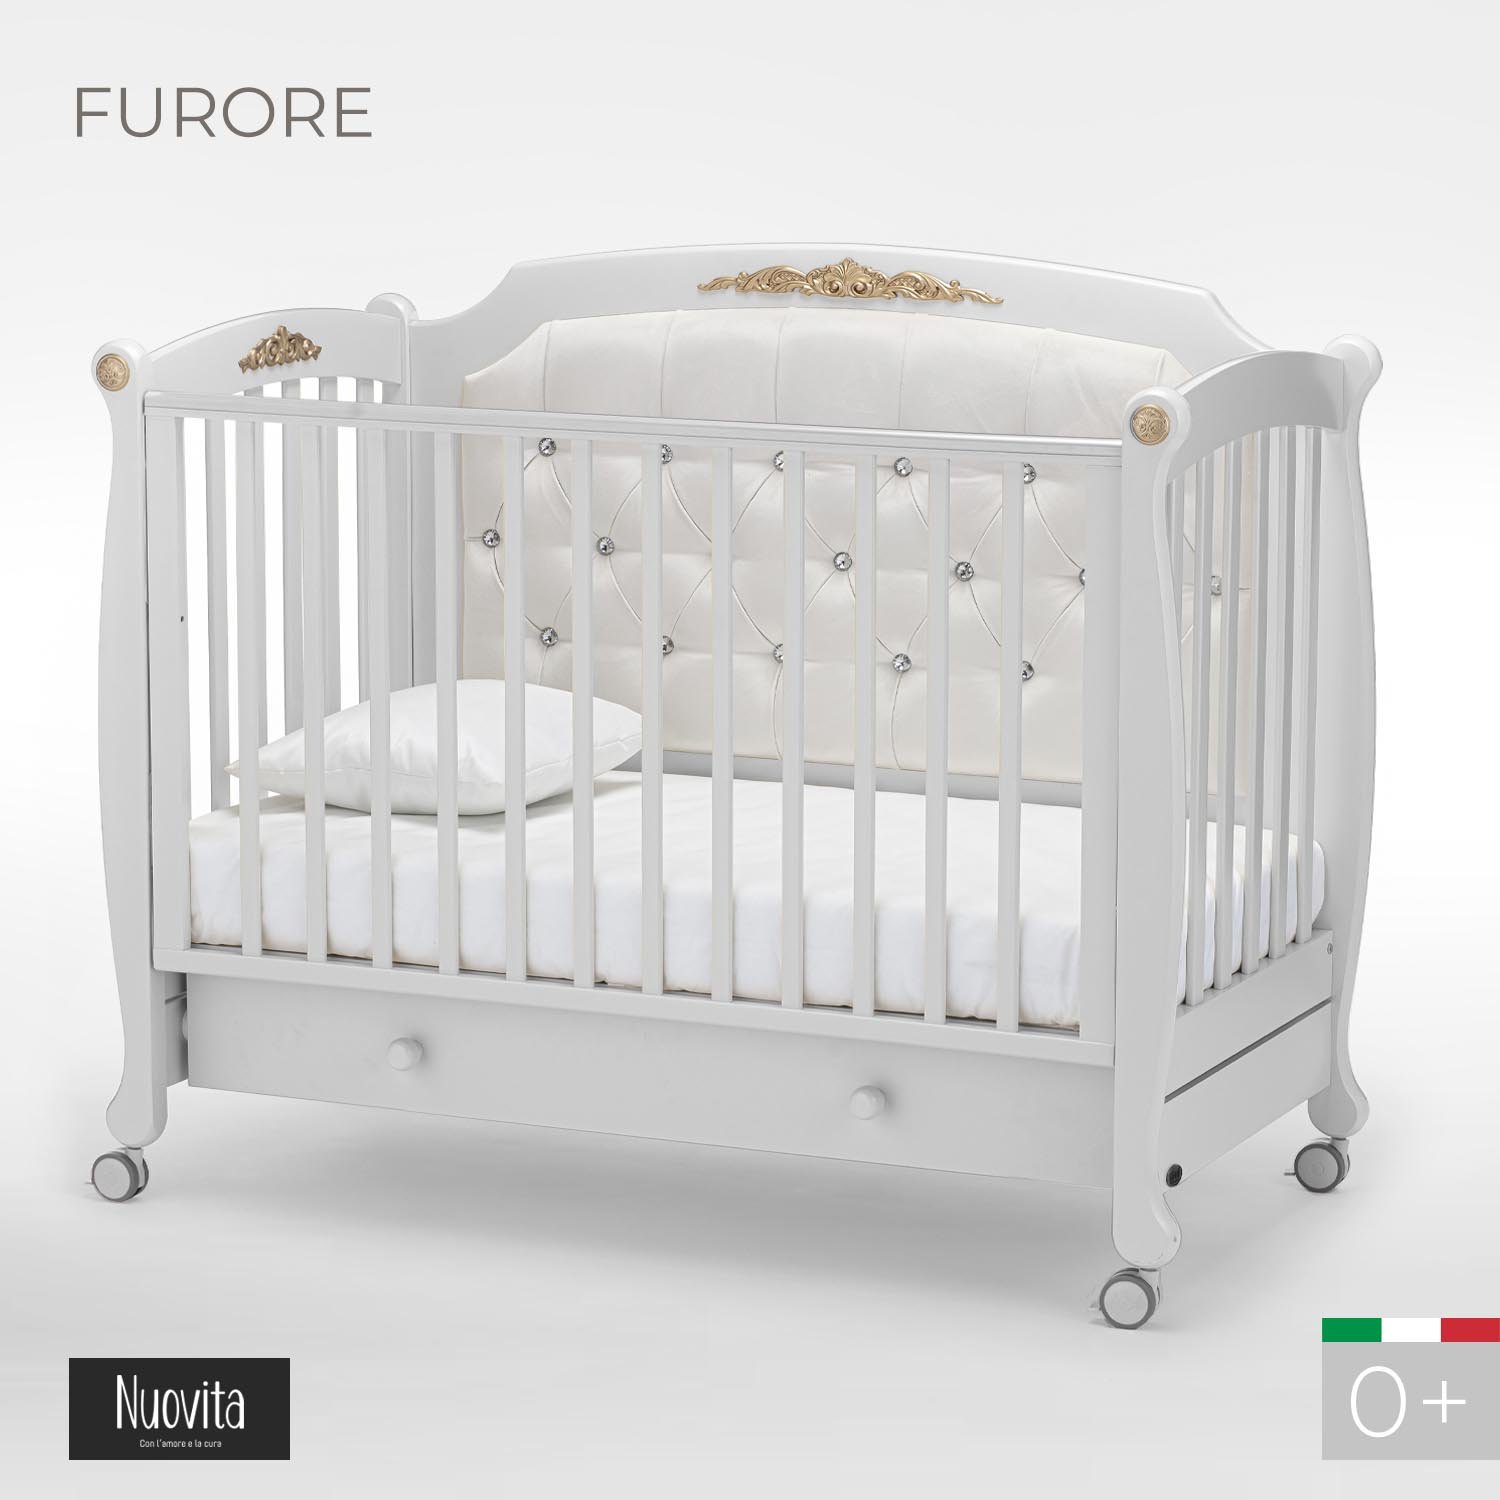 Кроватка Nuovita Furore bianco белый франшиза на 360 от покупки готовой до создания собственной